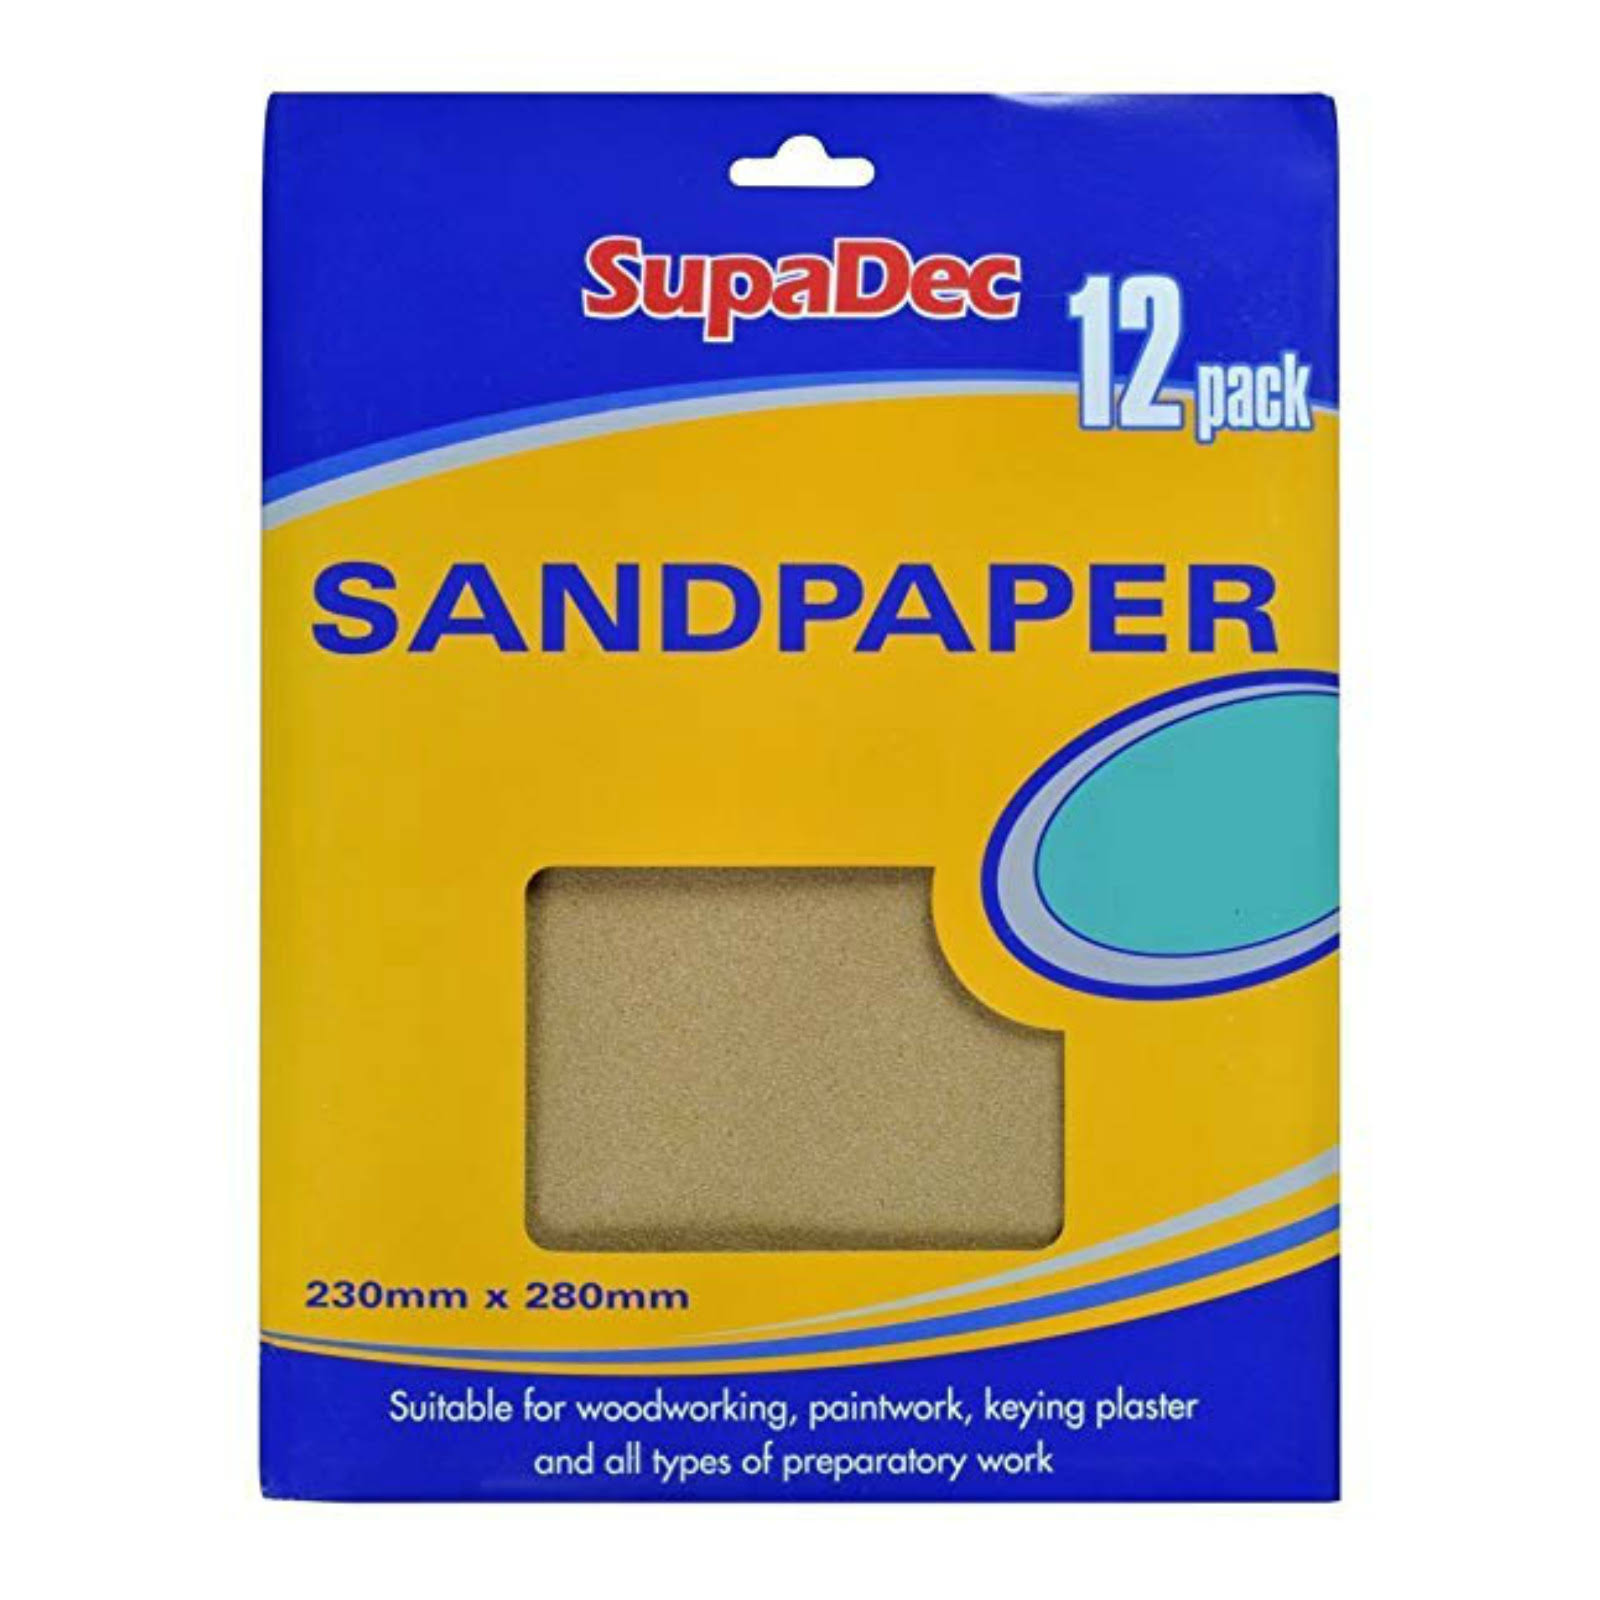 SupaDec General Purpose Sandpaper - 12 Pack